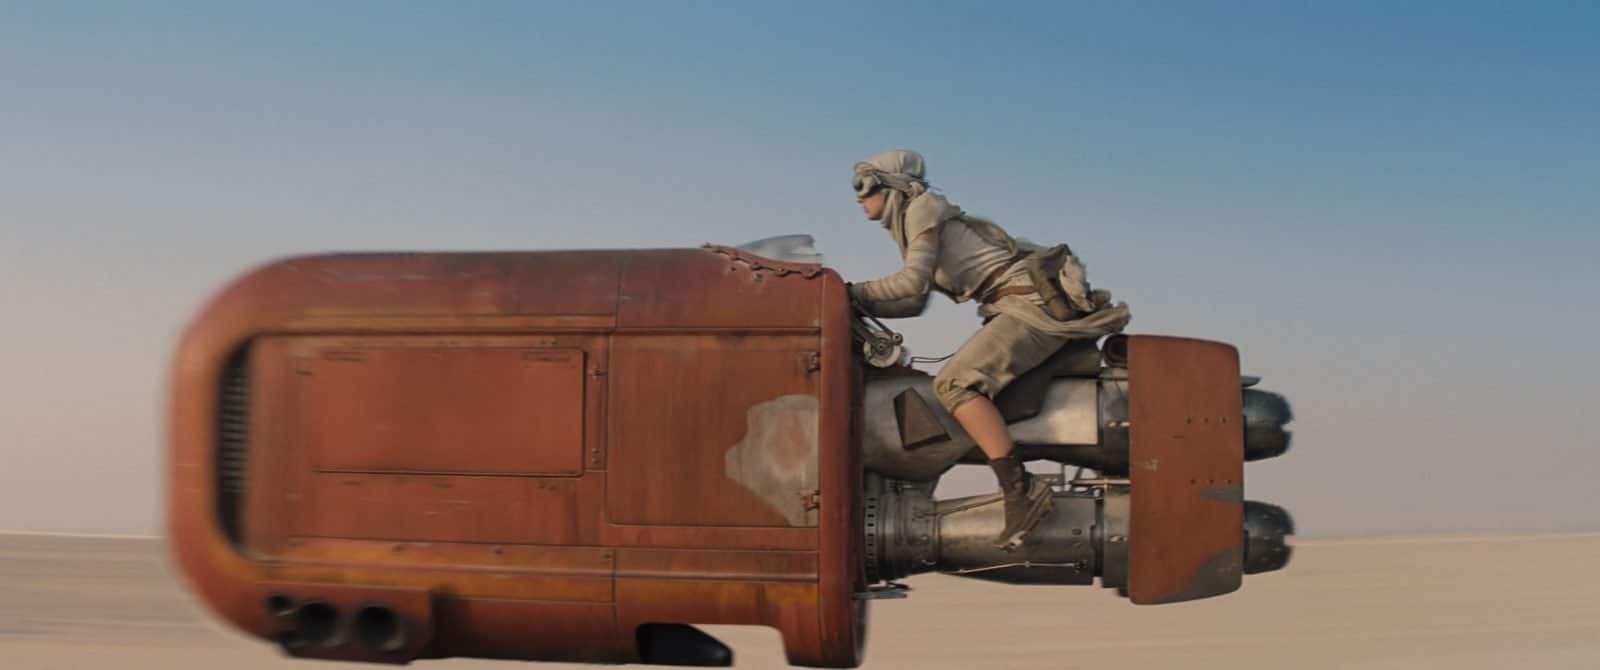 Star Wars VII The Force Awakens 40 - Rey on her speeder